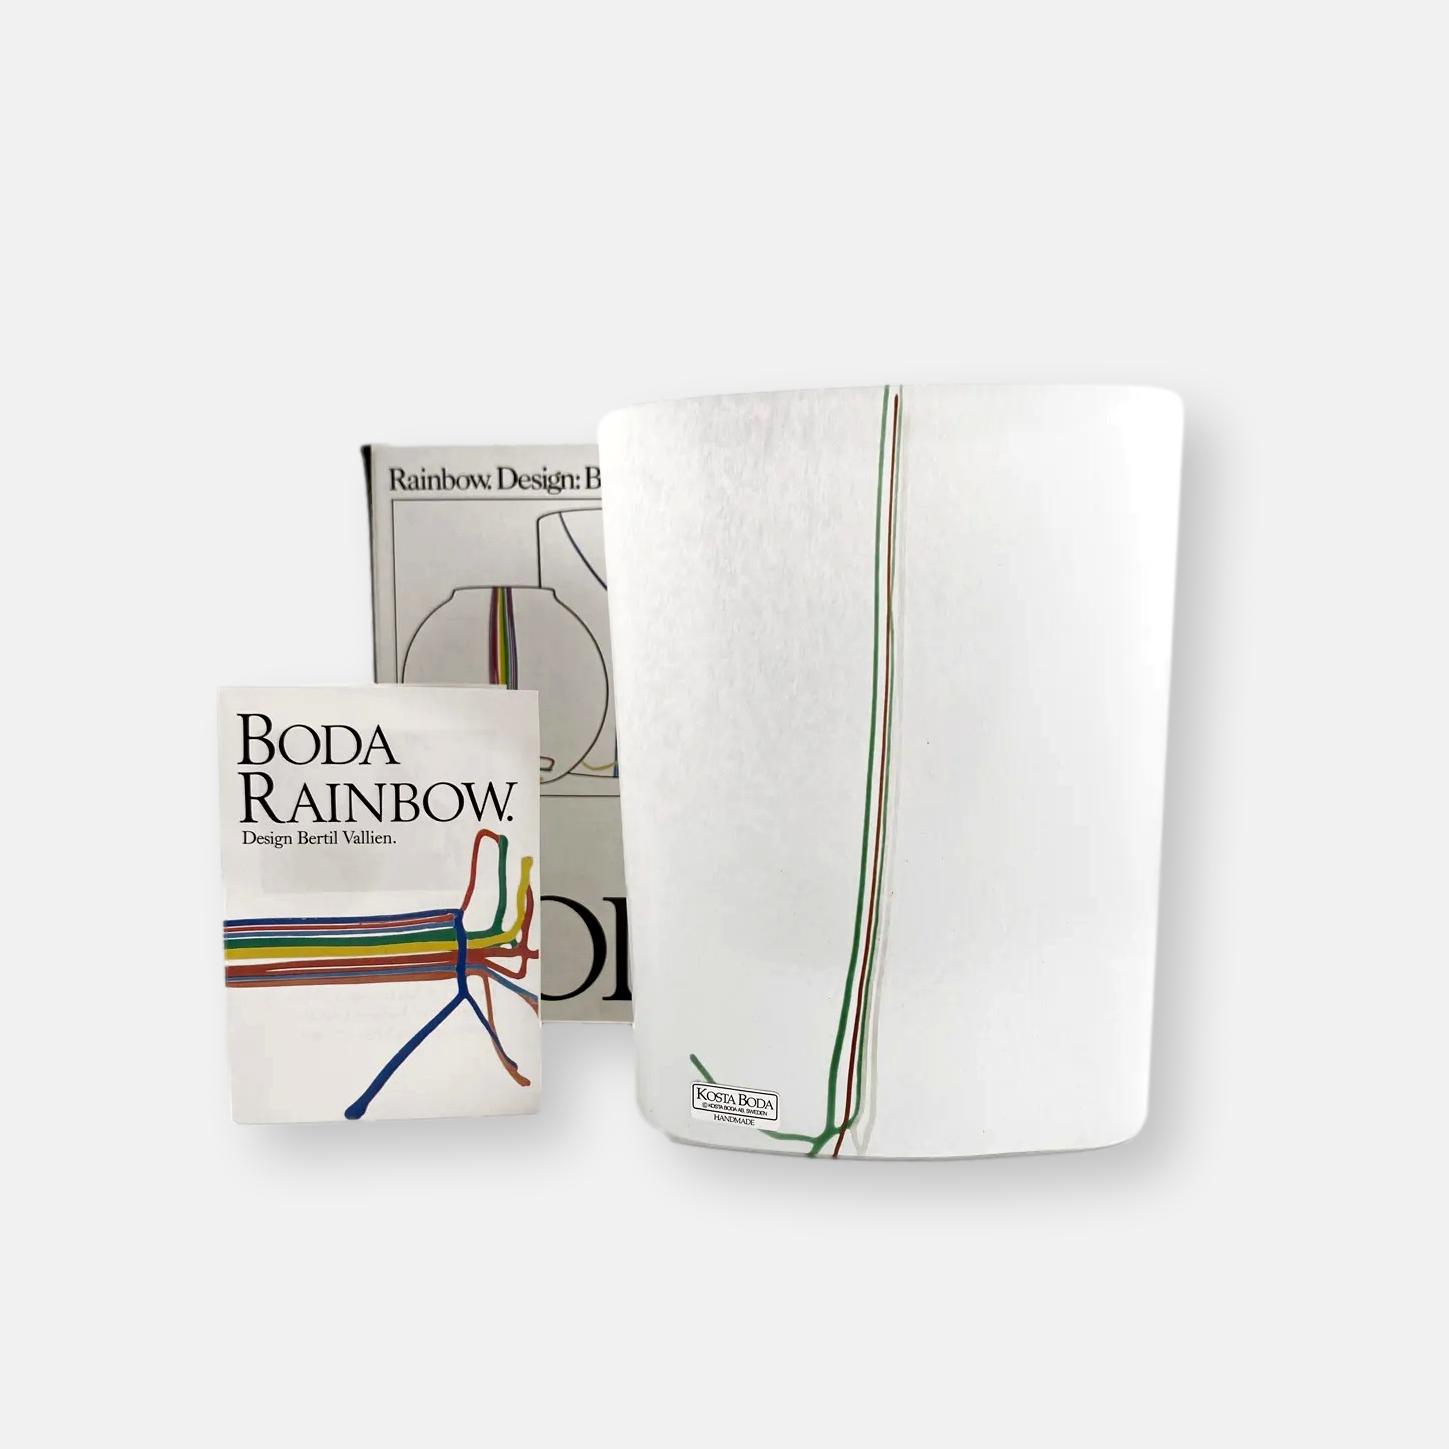 Vase de Bertil Vallien pour Kosta Boda de la serie "Rainbow"